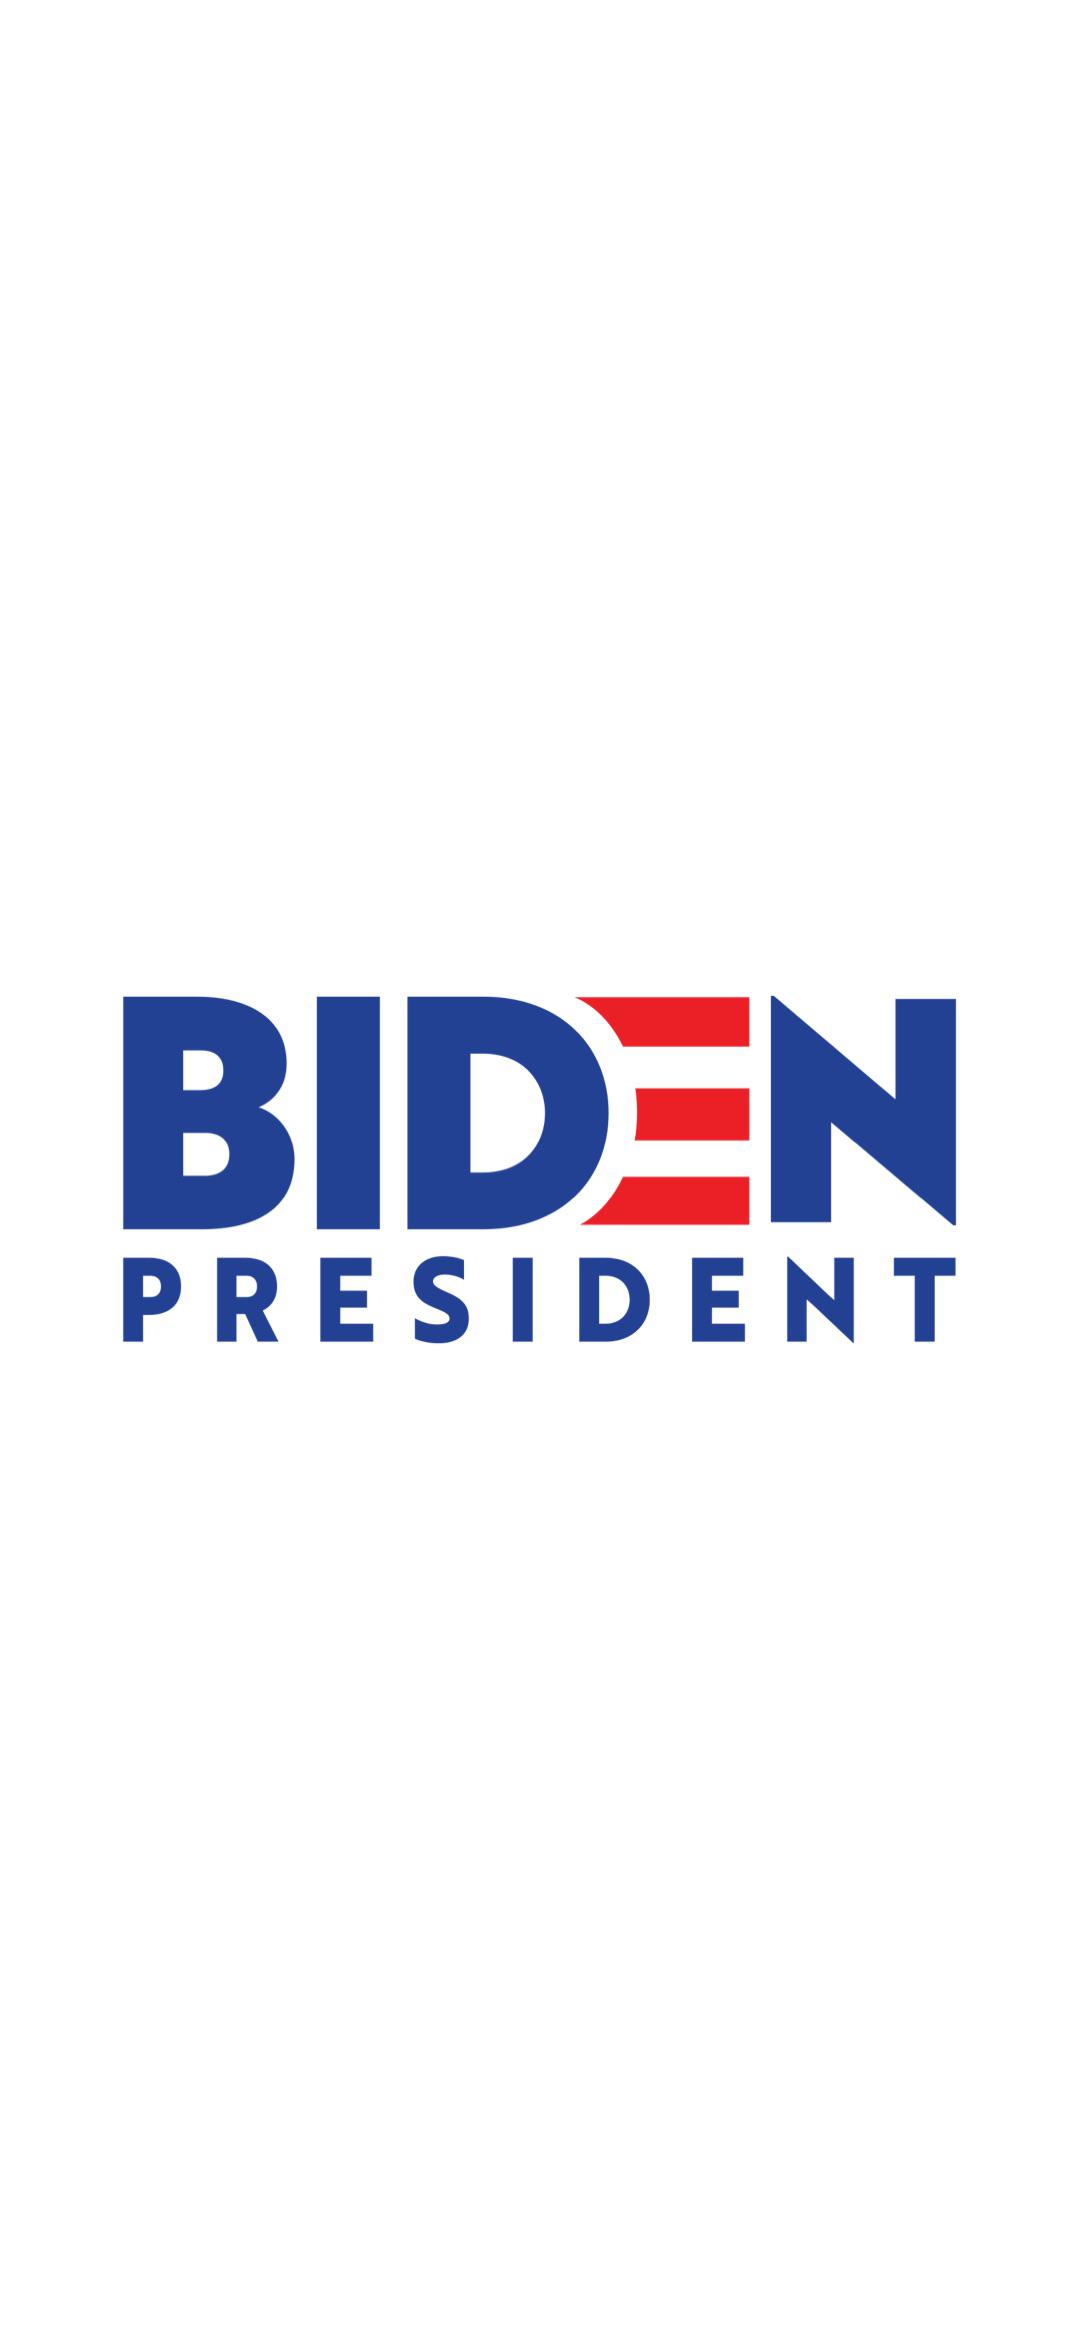 President Biden Wallpaper